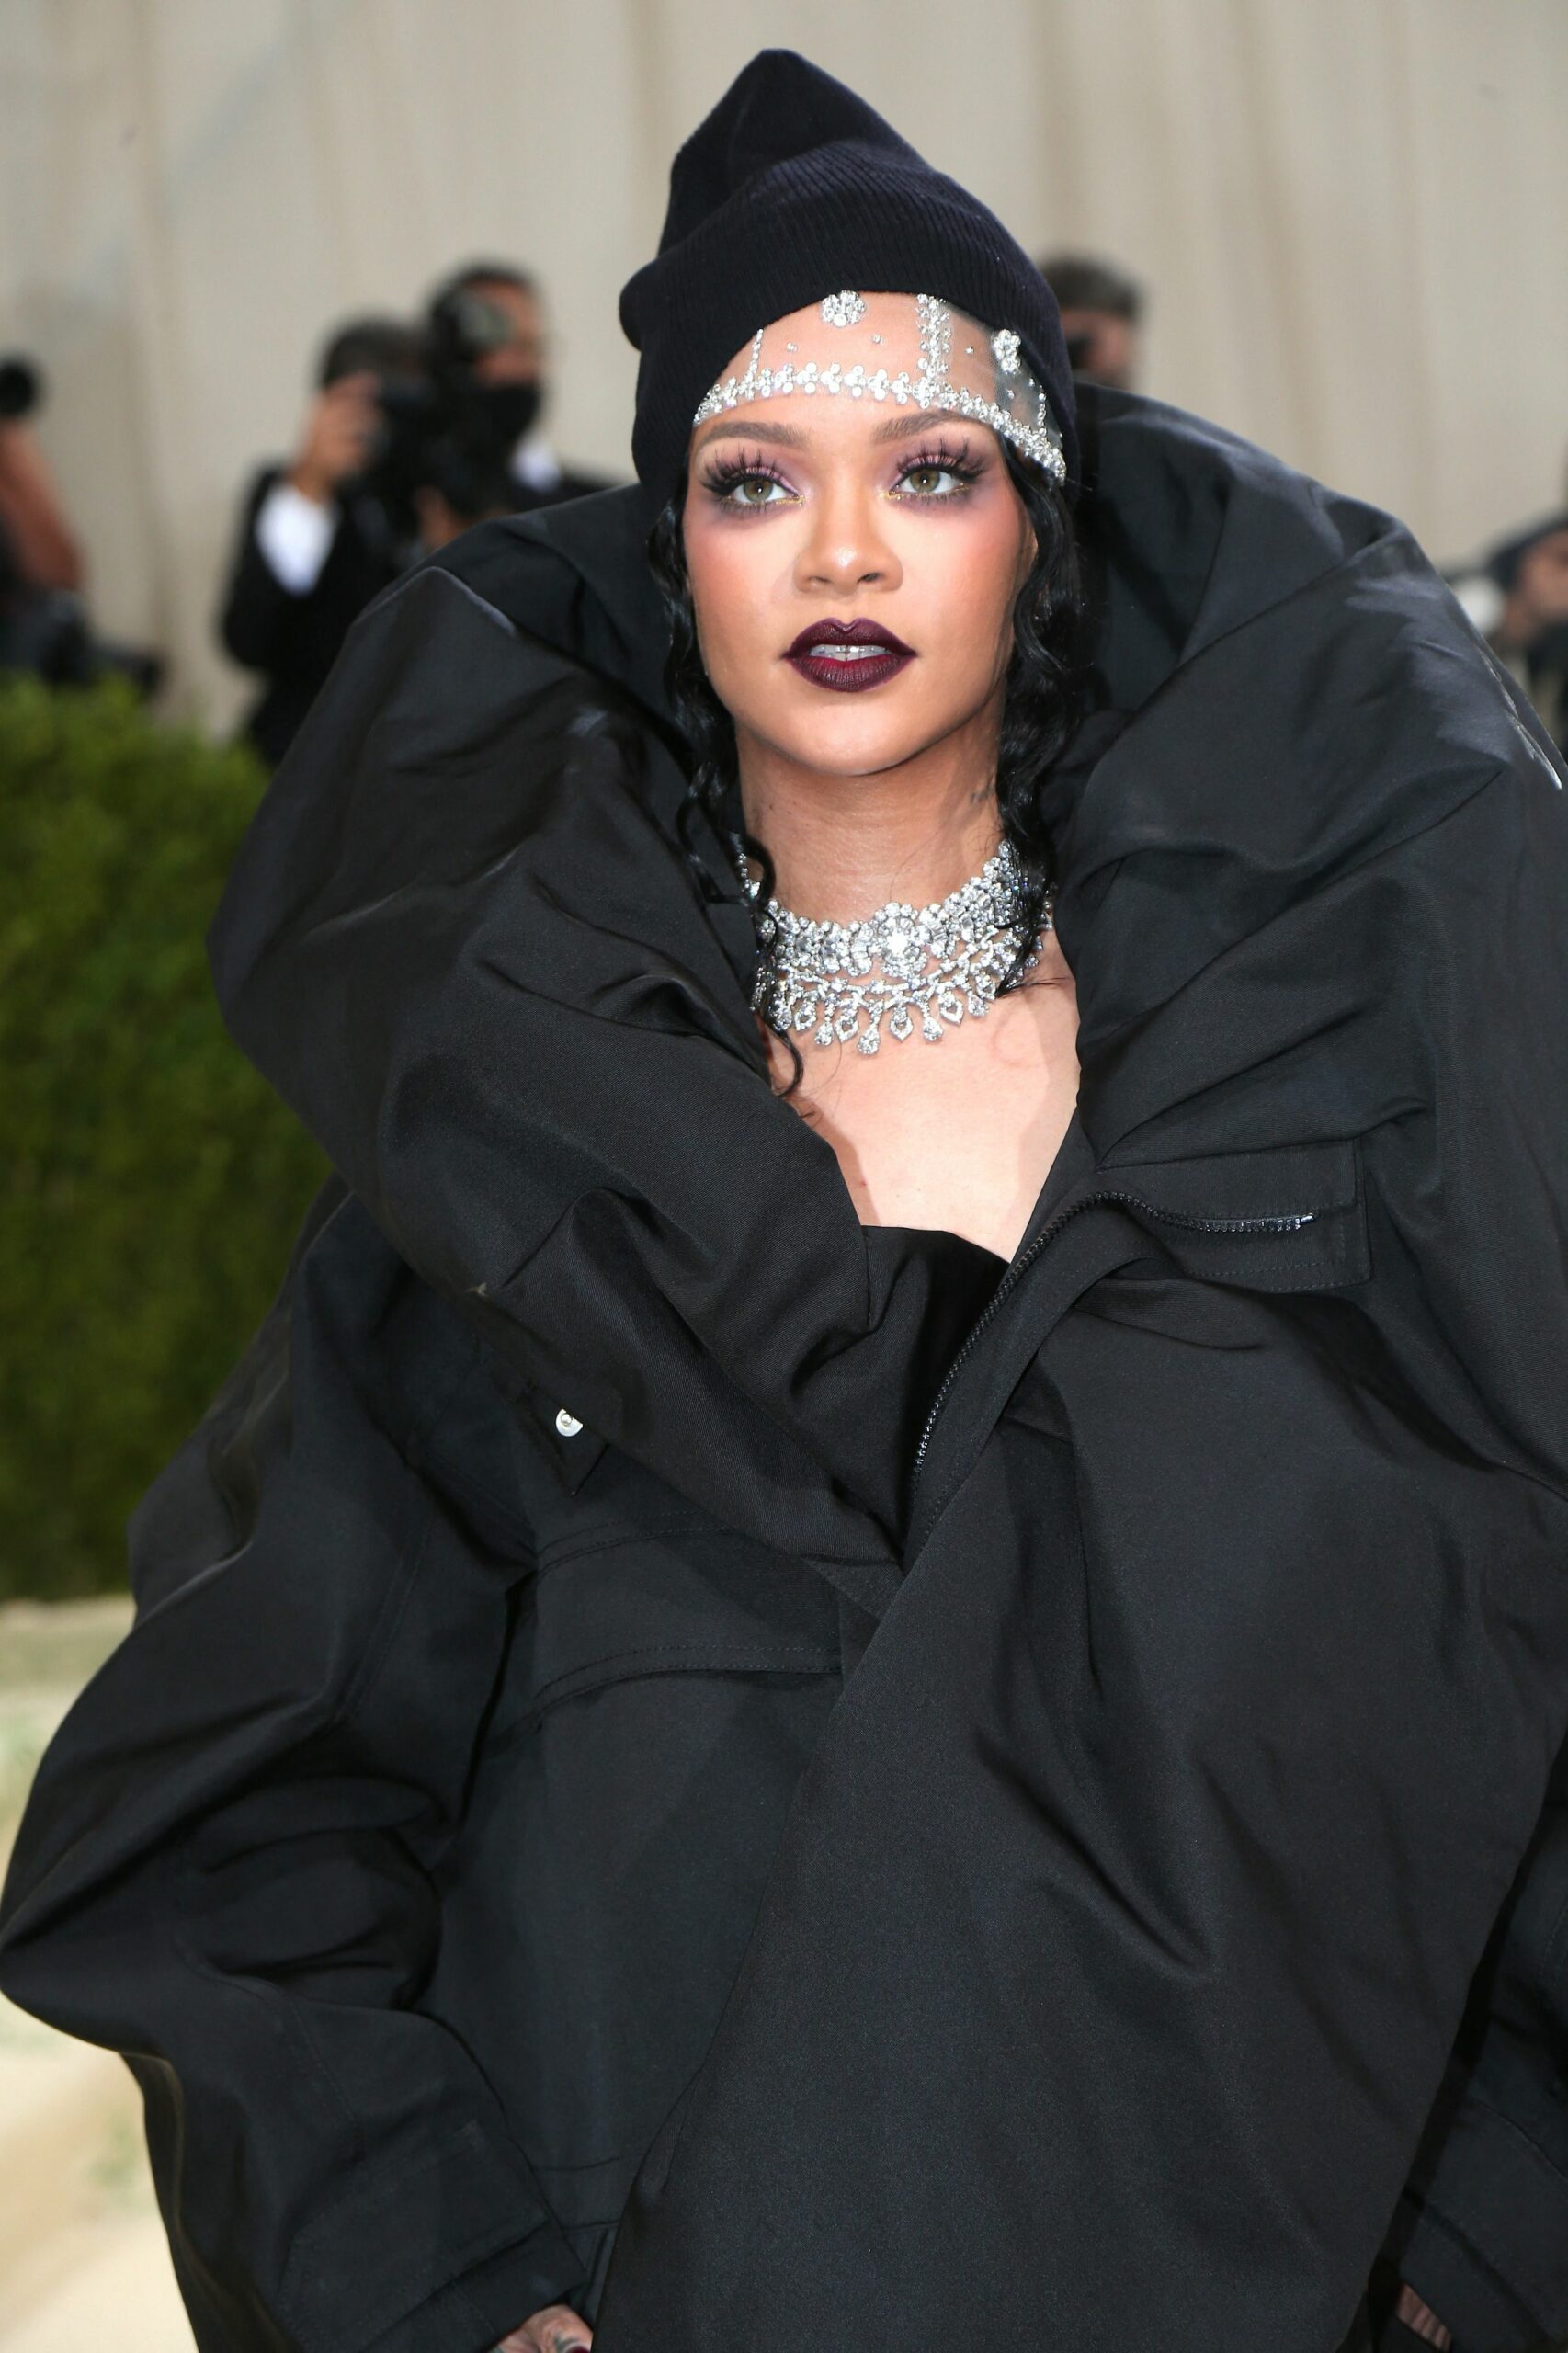 Slay, queen! Rihanna a devenit erou național în Barbados. Cum a primit artista această veste?